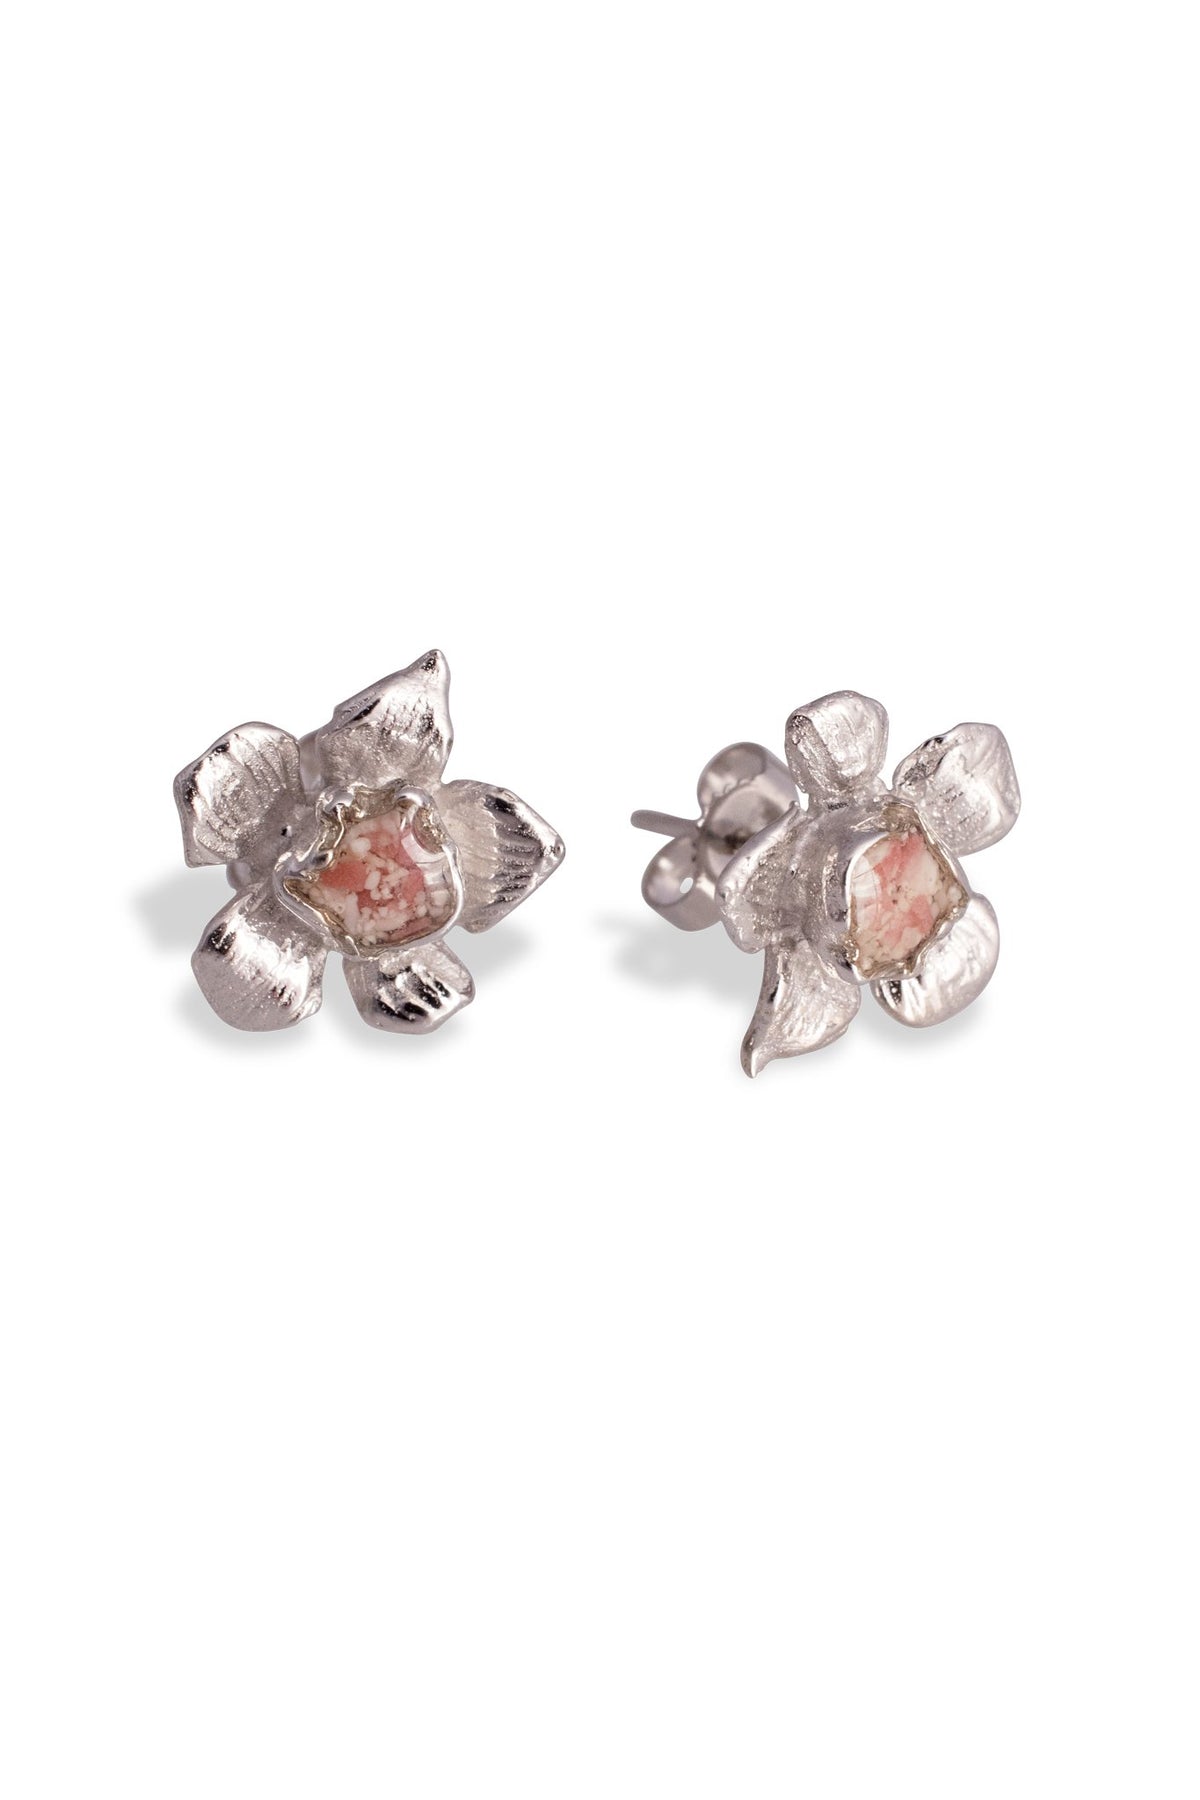 Fera ~ Tiny Flower Stud Earrings in Gold - Alexandra Mosher Studio Jewellery Bermuda Fine